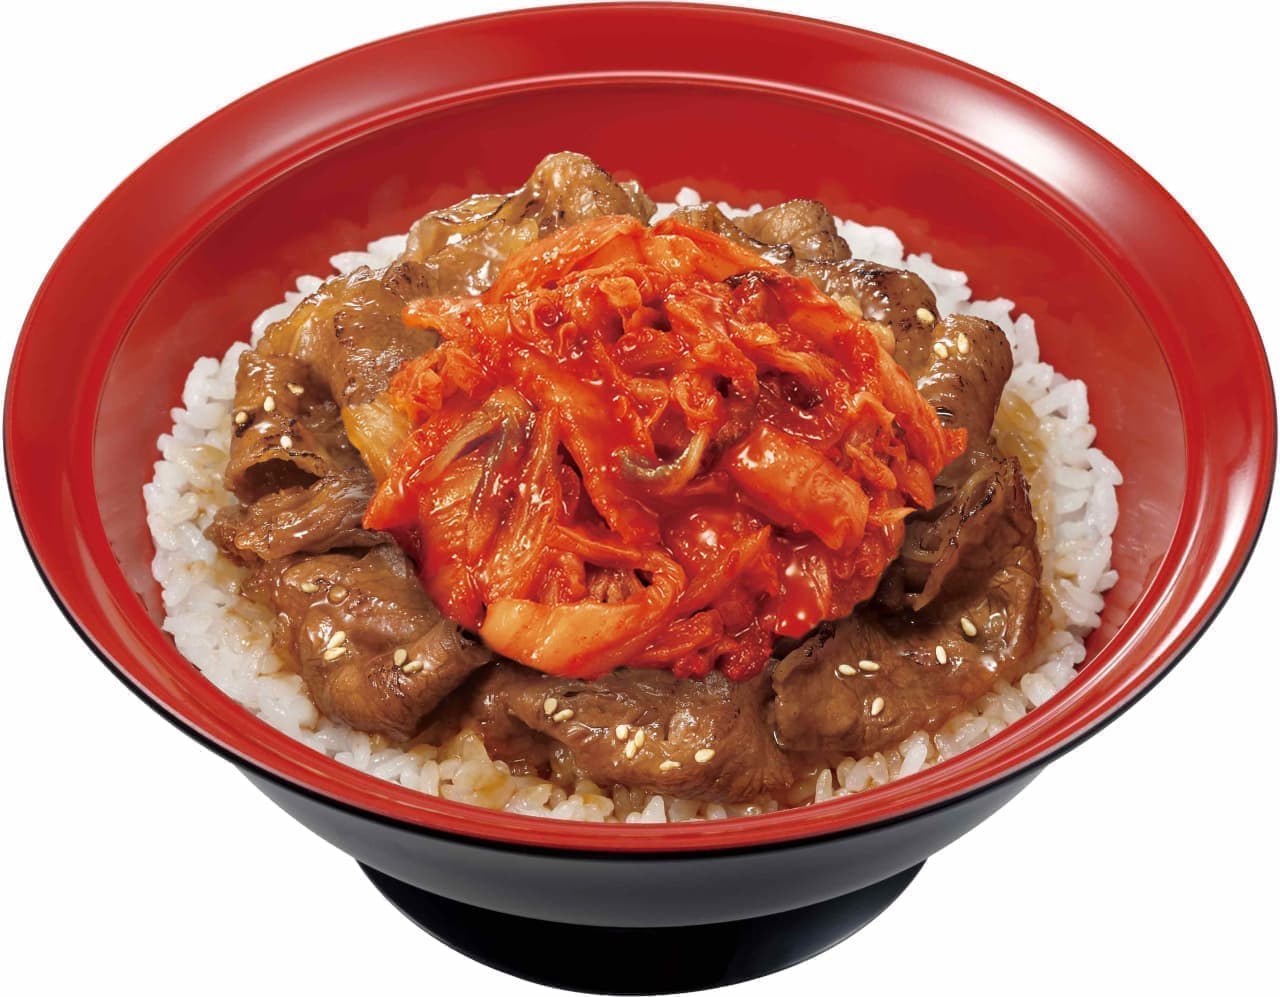 Sukiya "Kimchi Beef Kalbi Bowl